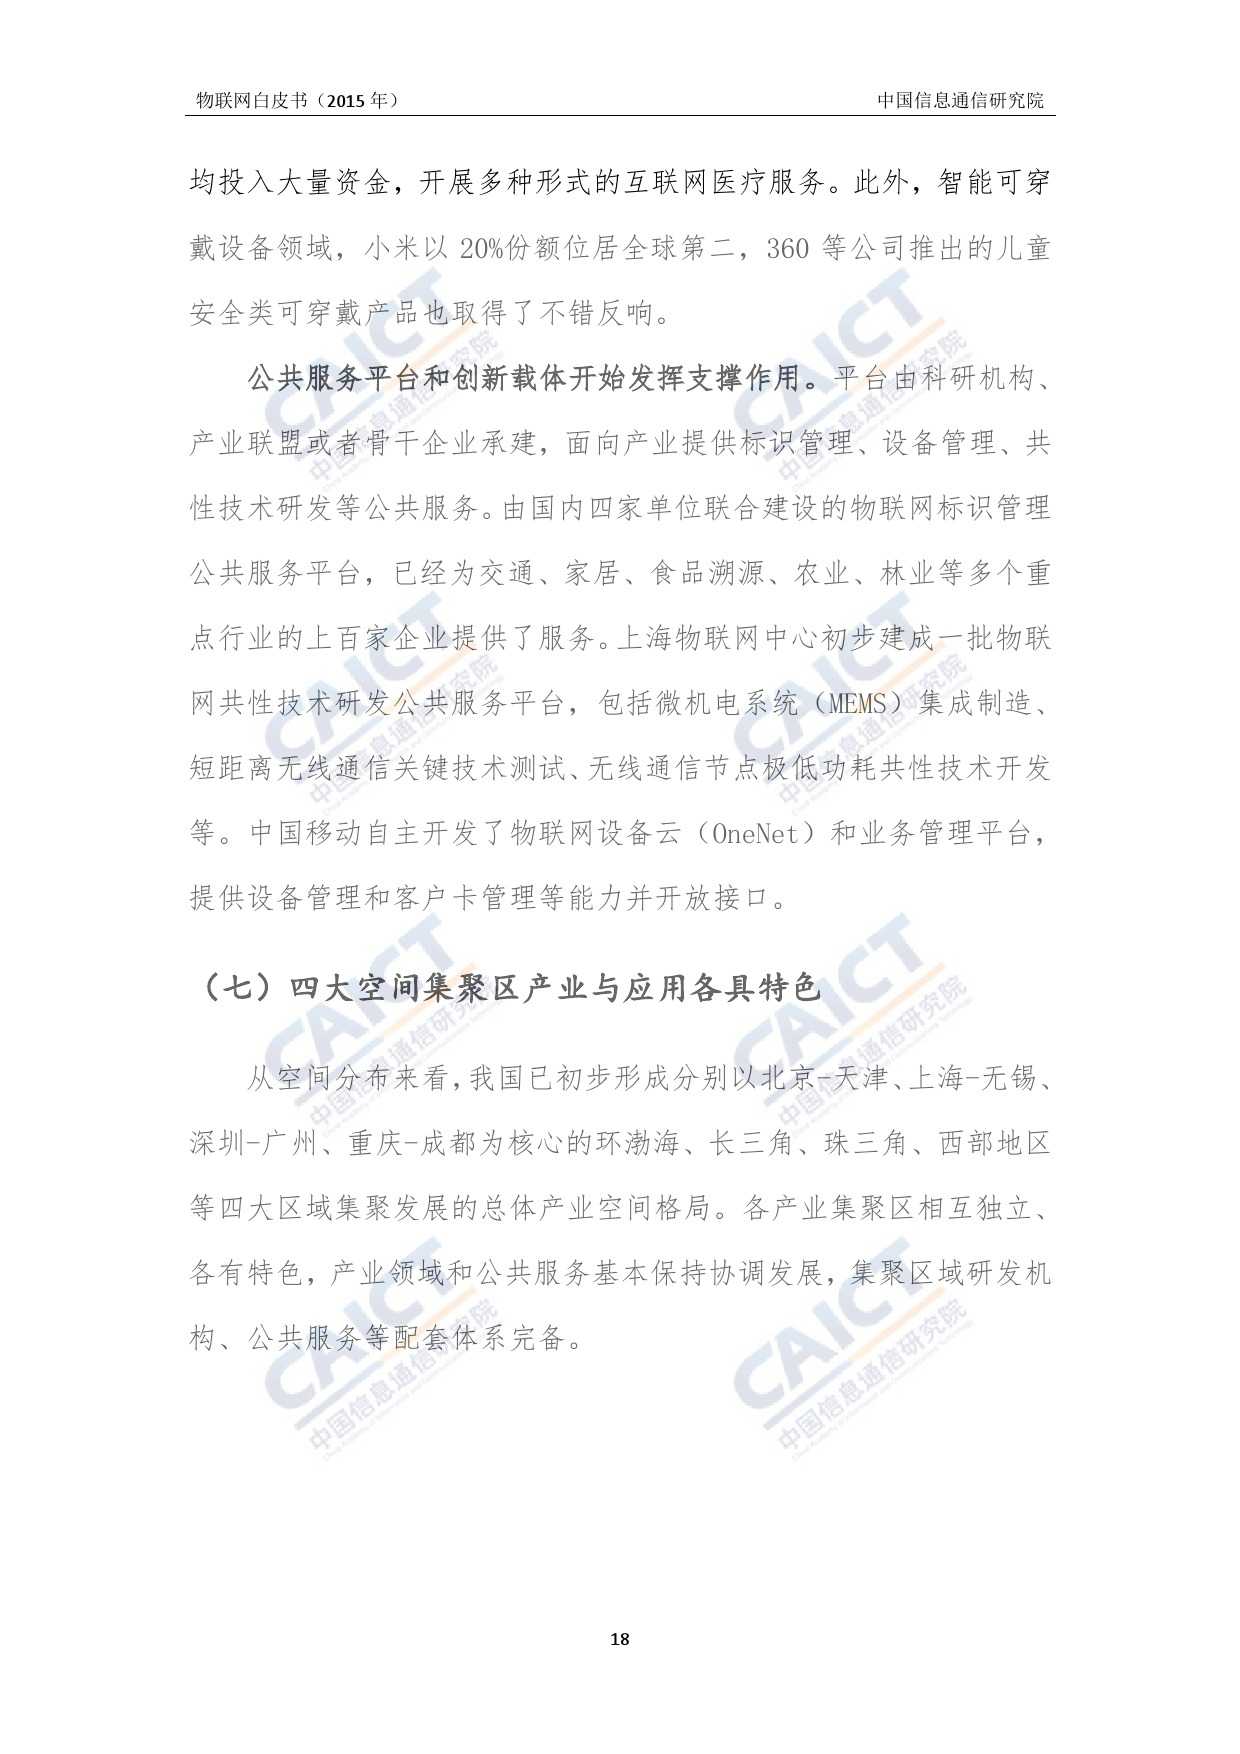 中国信息通信研究院：2015年物联网白皮书_000022